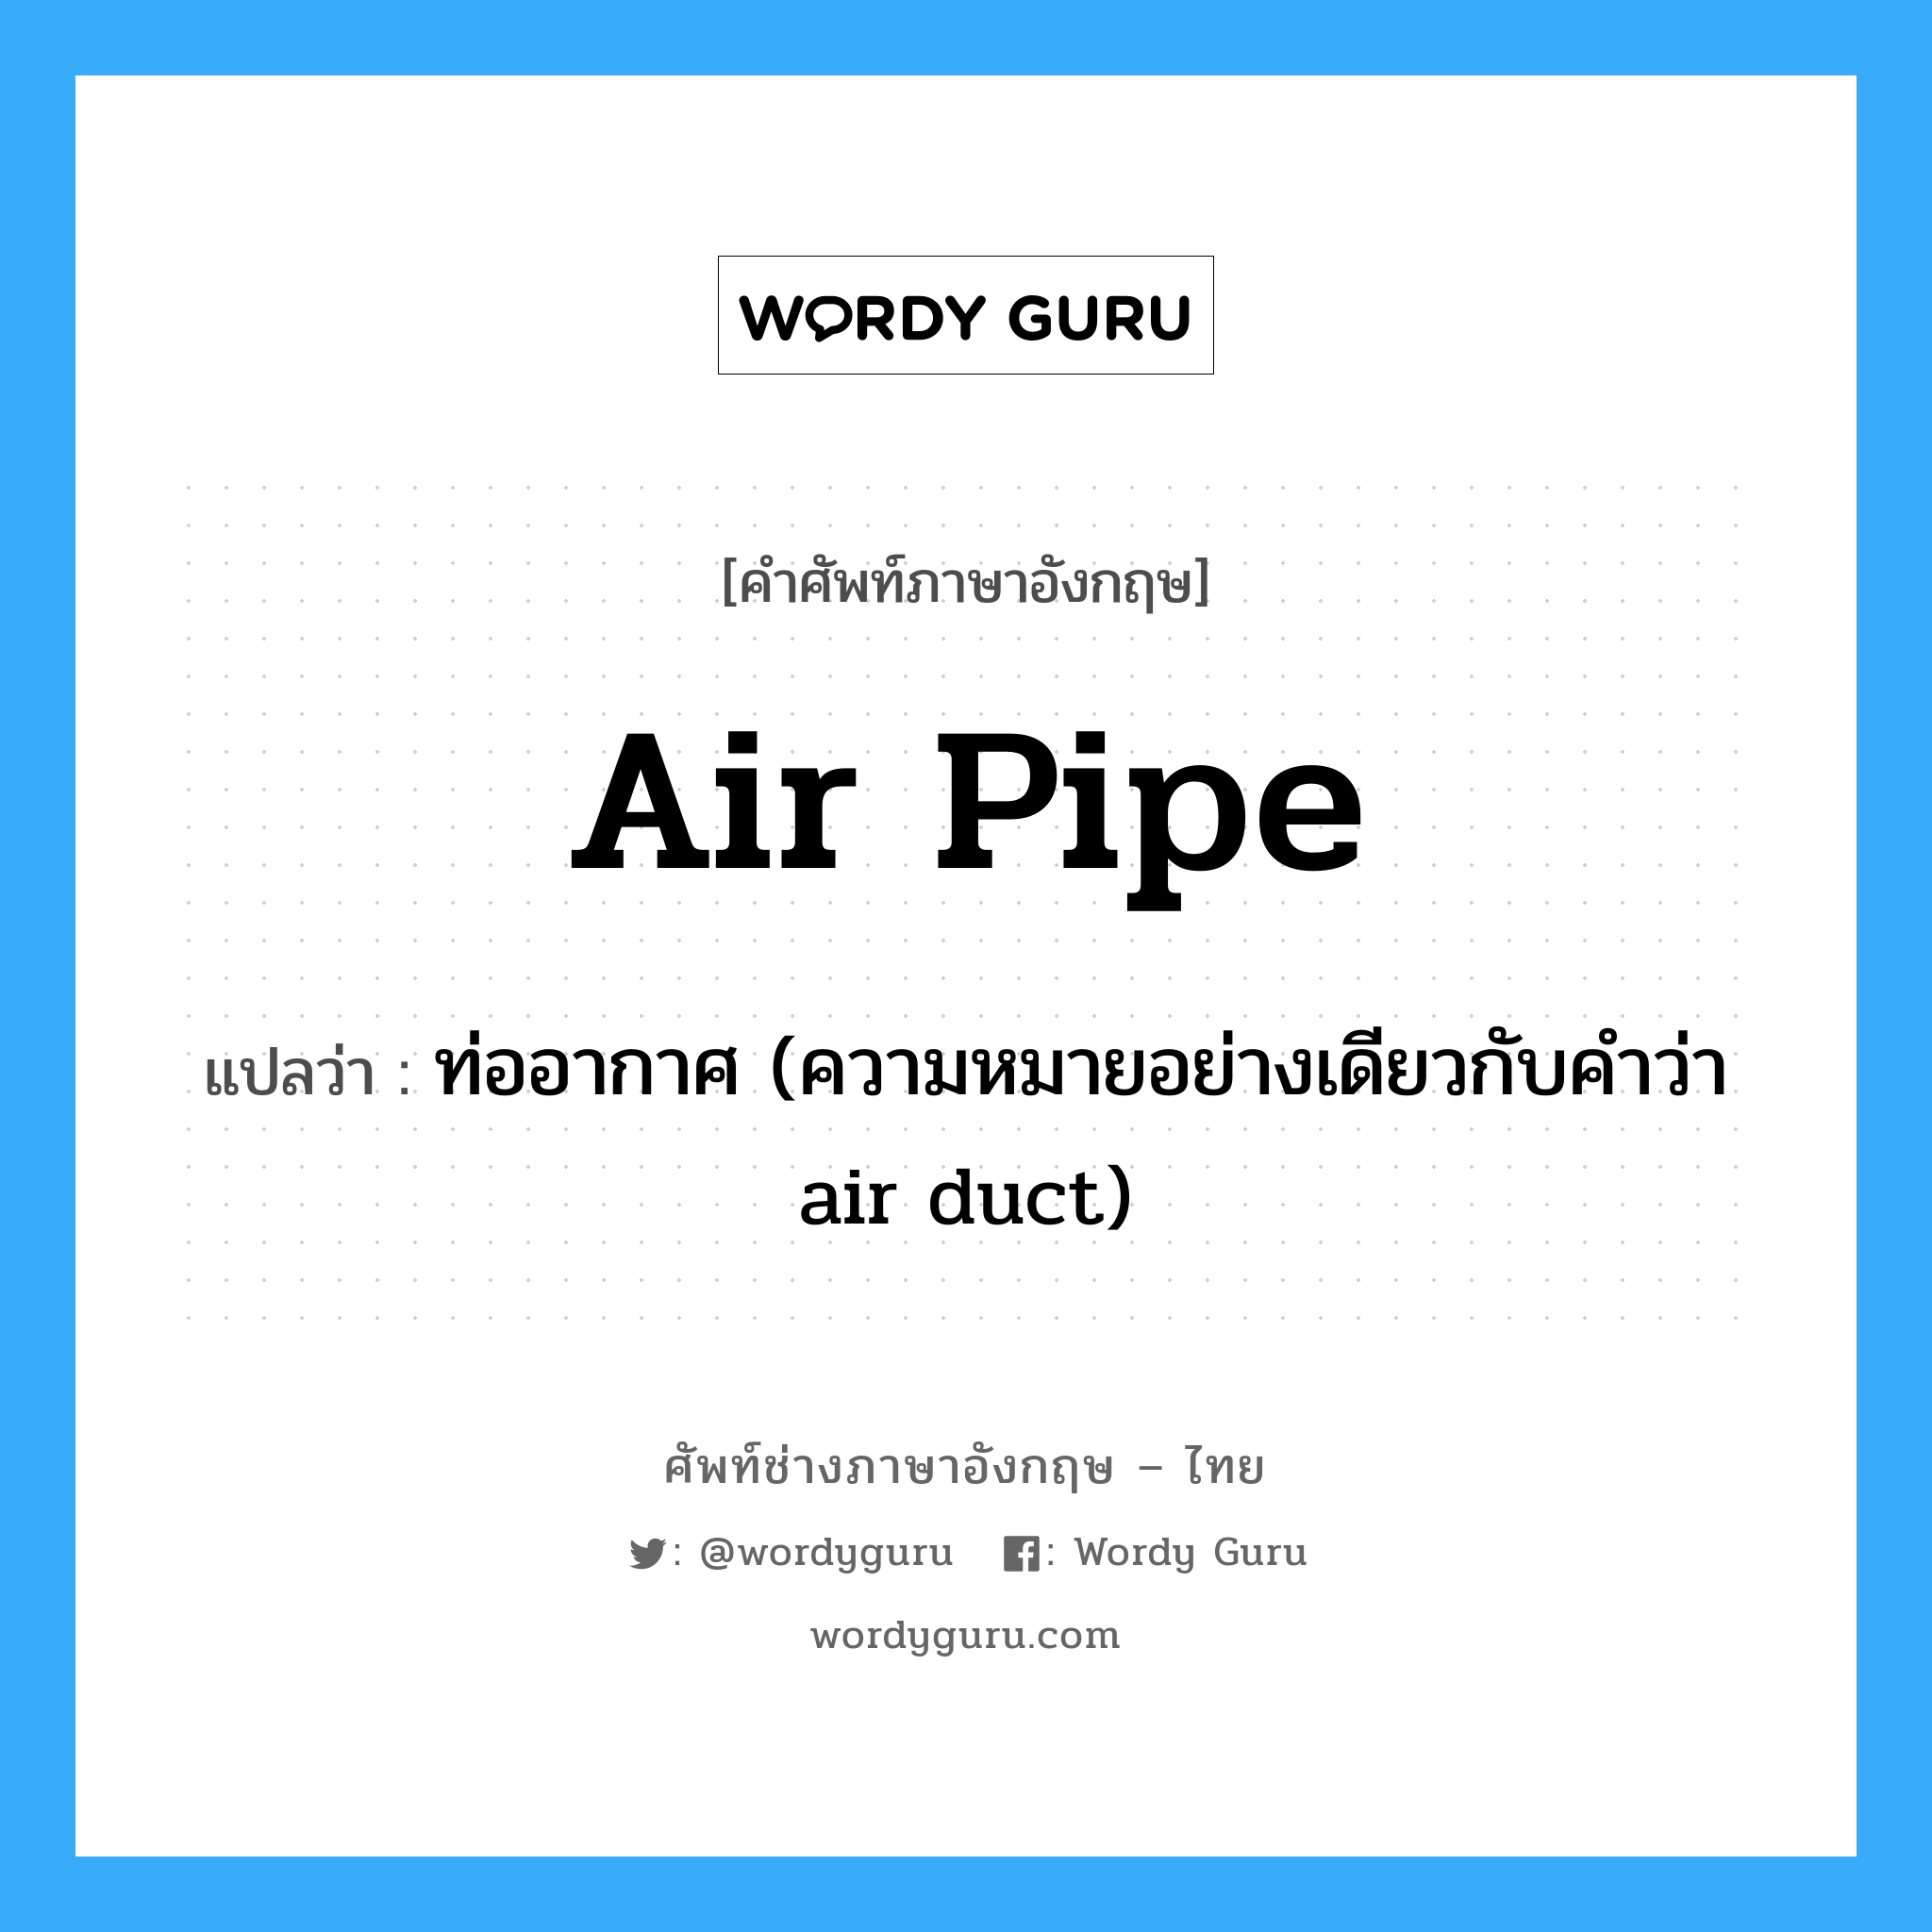 ท่ออากาศ (ความหมายอย่างเดียวกับคำว่า air duct) ภาษาอังกฤษ?, คำศัพท์ช่างภาษาอังกฤษ - ไทย ท่ออากาศ (ความหมายอย่างเดียวกับคำว่า air duct) คำศัพท์ภาษาอังกฤษ ท่ออากาศ (ความหมายอย่างเดียวกับคำว่า air duct) แปลว่า air pipe